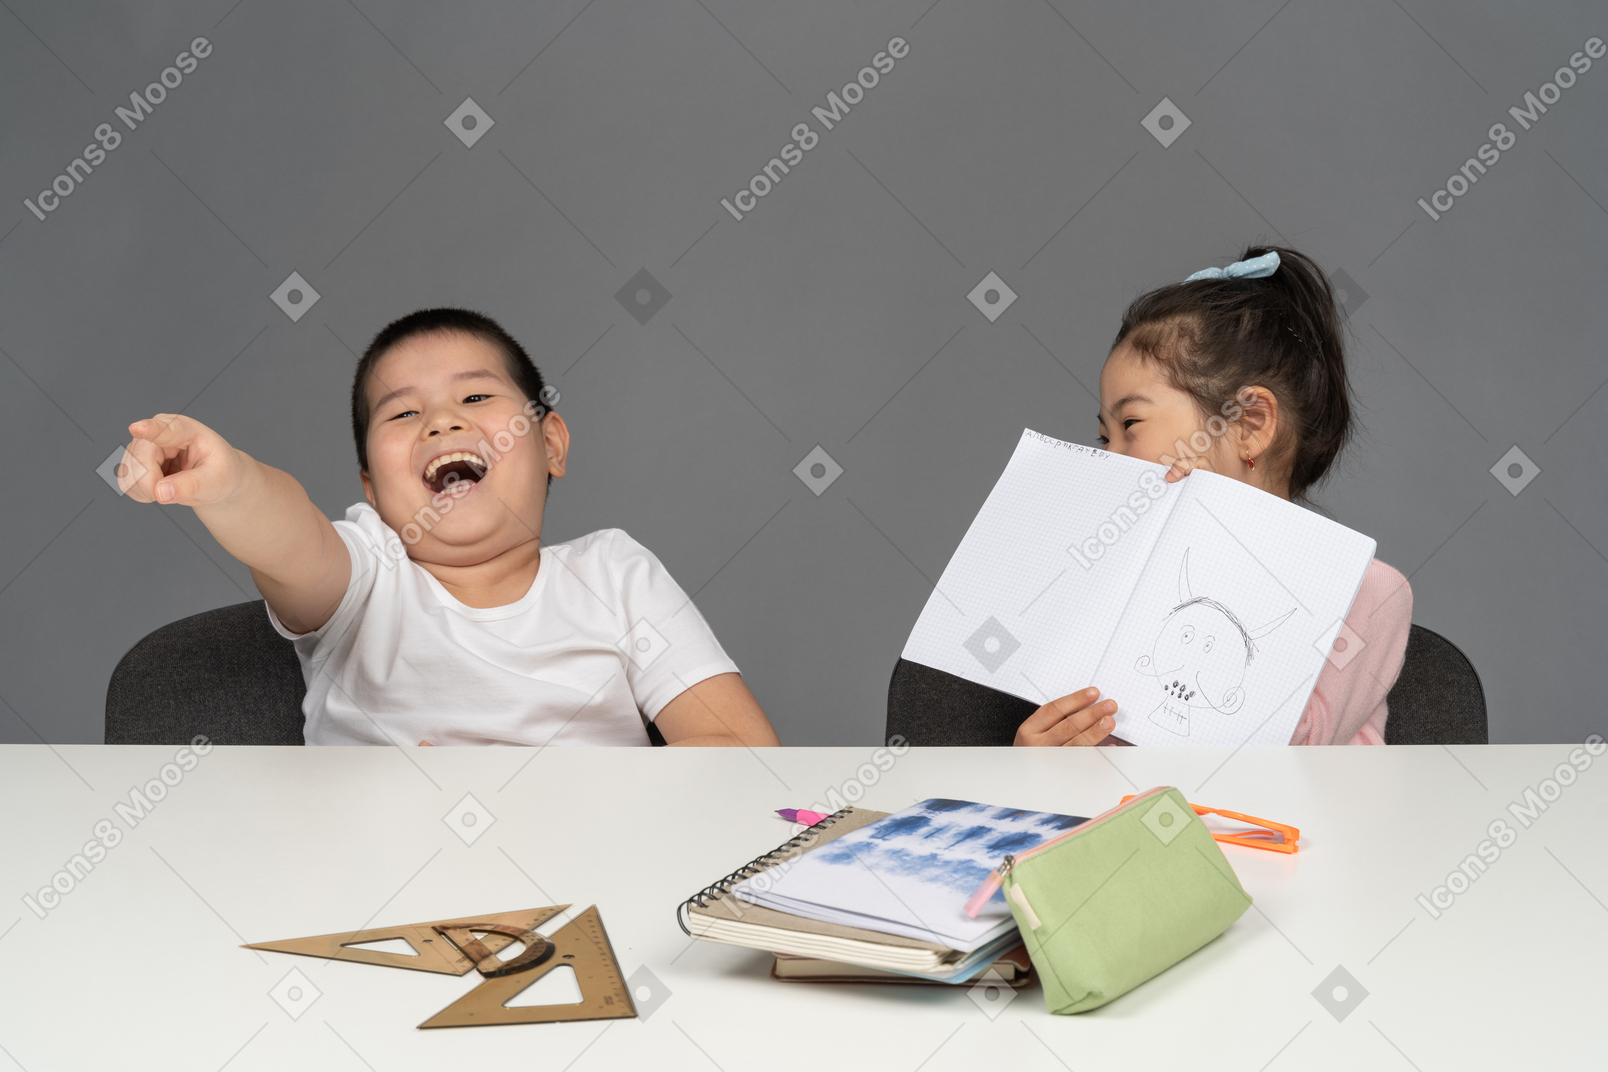 Niño riendo y señalando con el dedo junto a su hermana